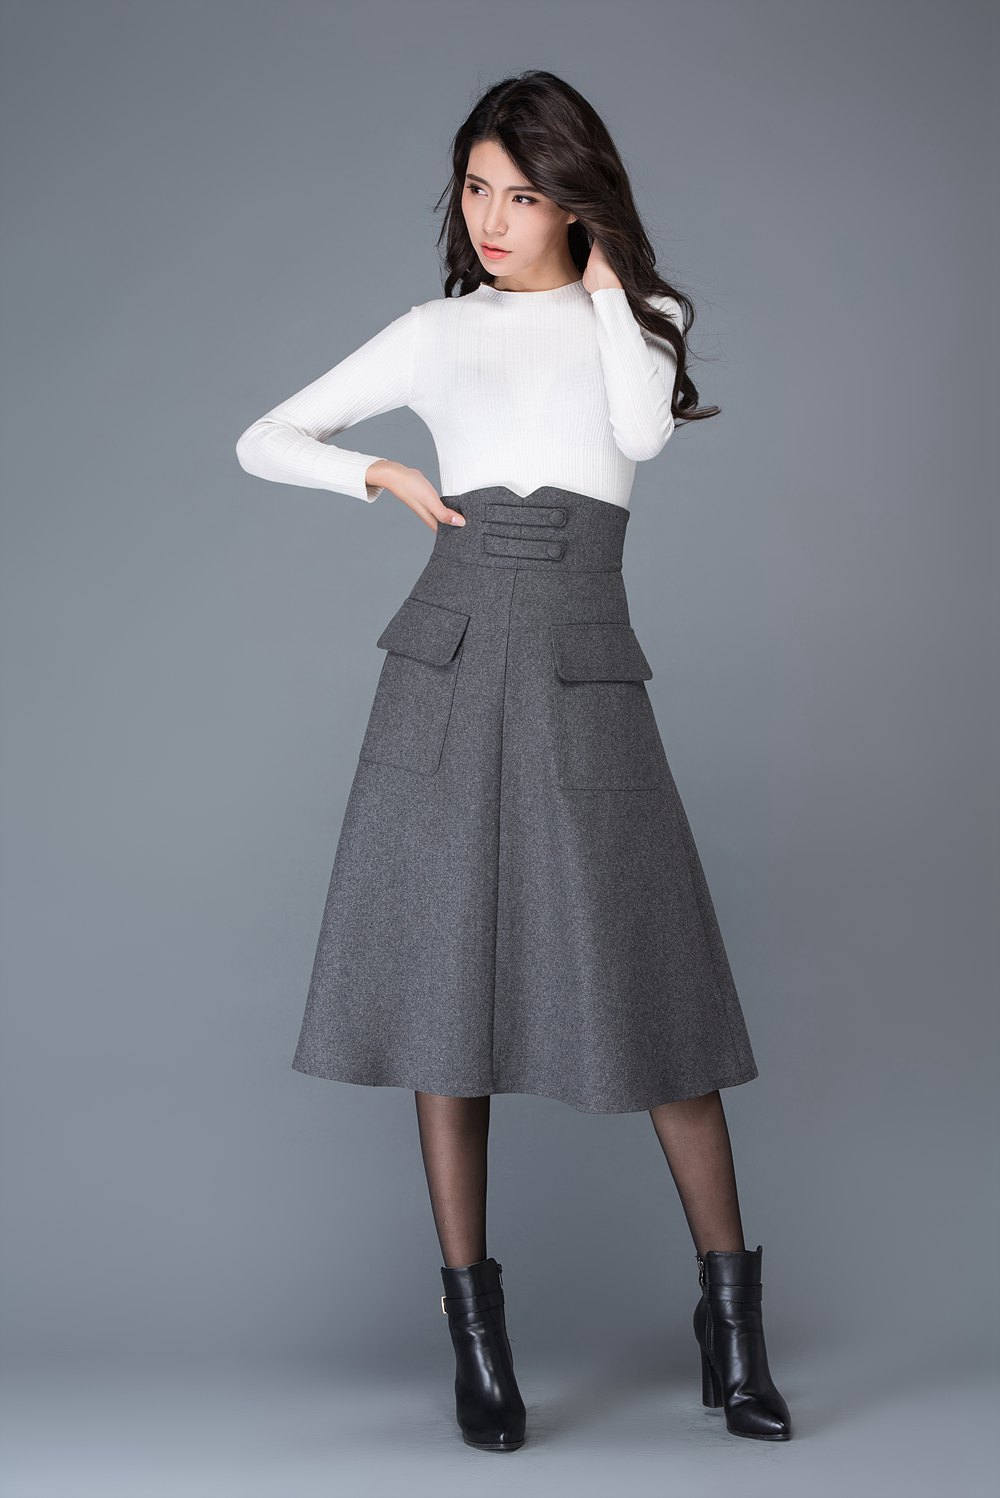 High Waisted Wool Skirt in Gray, Midi Skirt, Winter Skirts, Designer Skirt,  Warm Skirt, Pocket Skirt, Womens Skirts, Custom Skirt C1035 